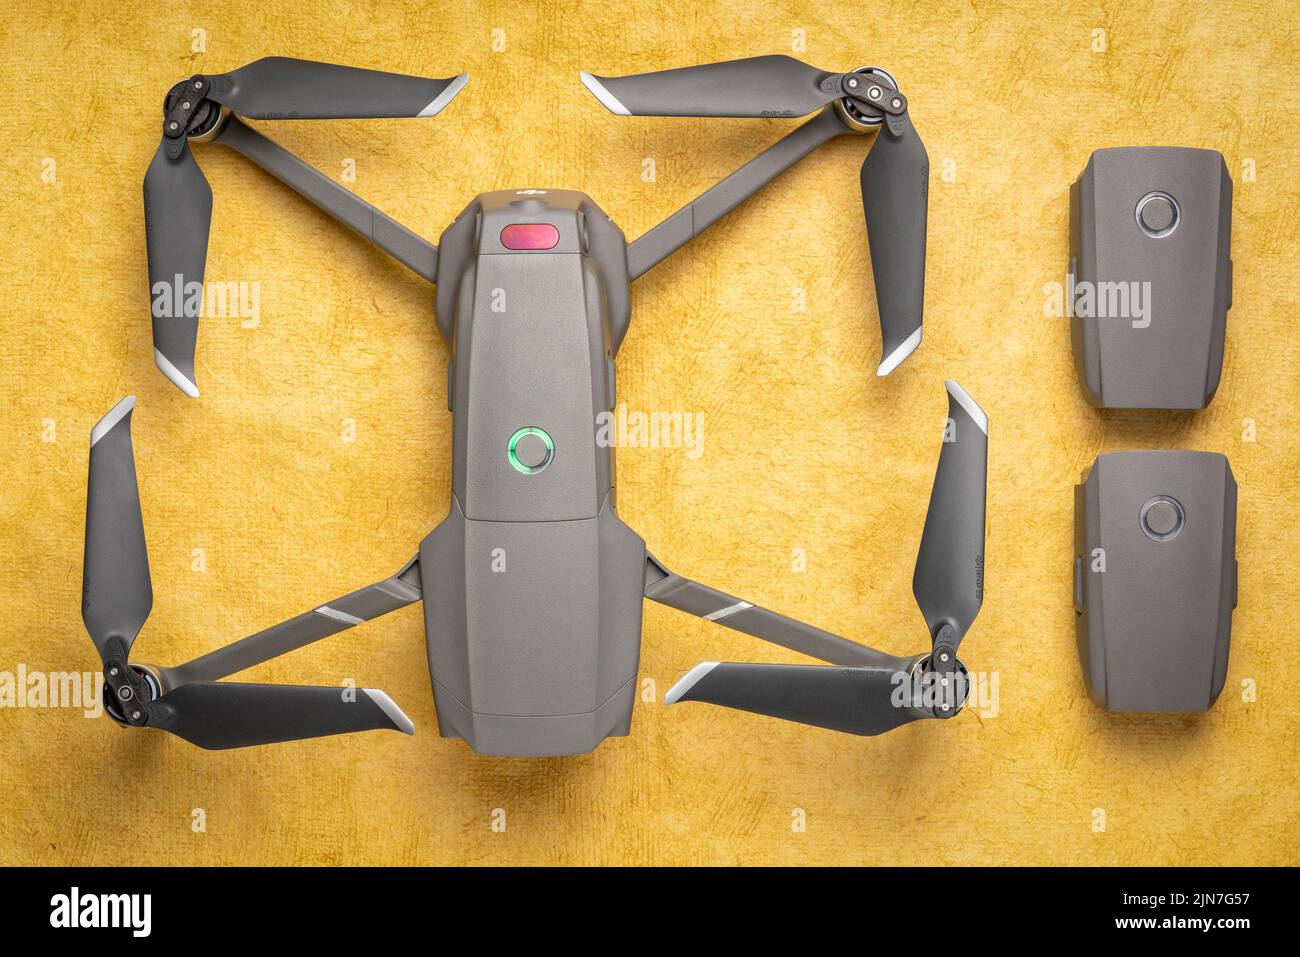 Fort Collins, CO, EE.UU. - 10 de marzo de 2019 Vista aérea del DJI Mavic 2 pro drone con dos baterías de repuesto contra papel artesanal texturizado. Foto de stock